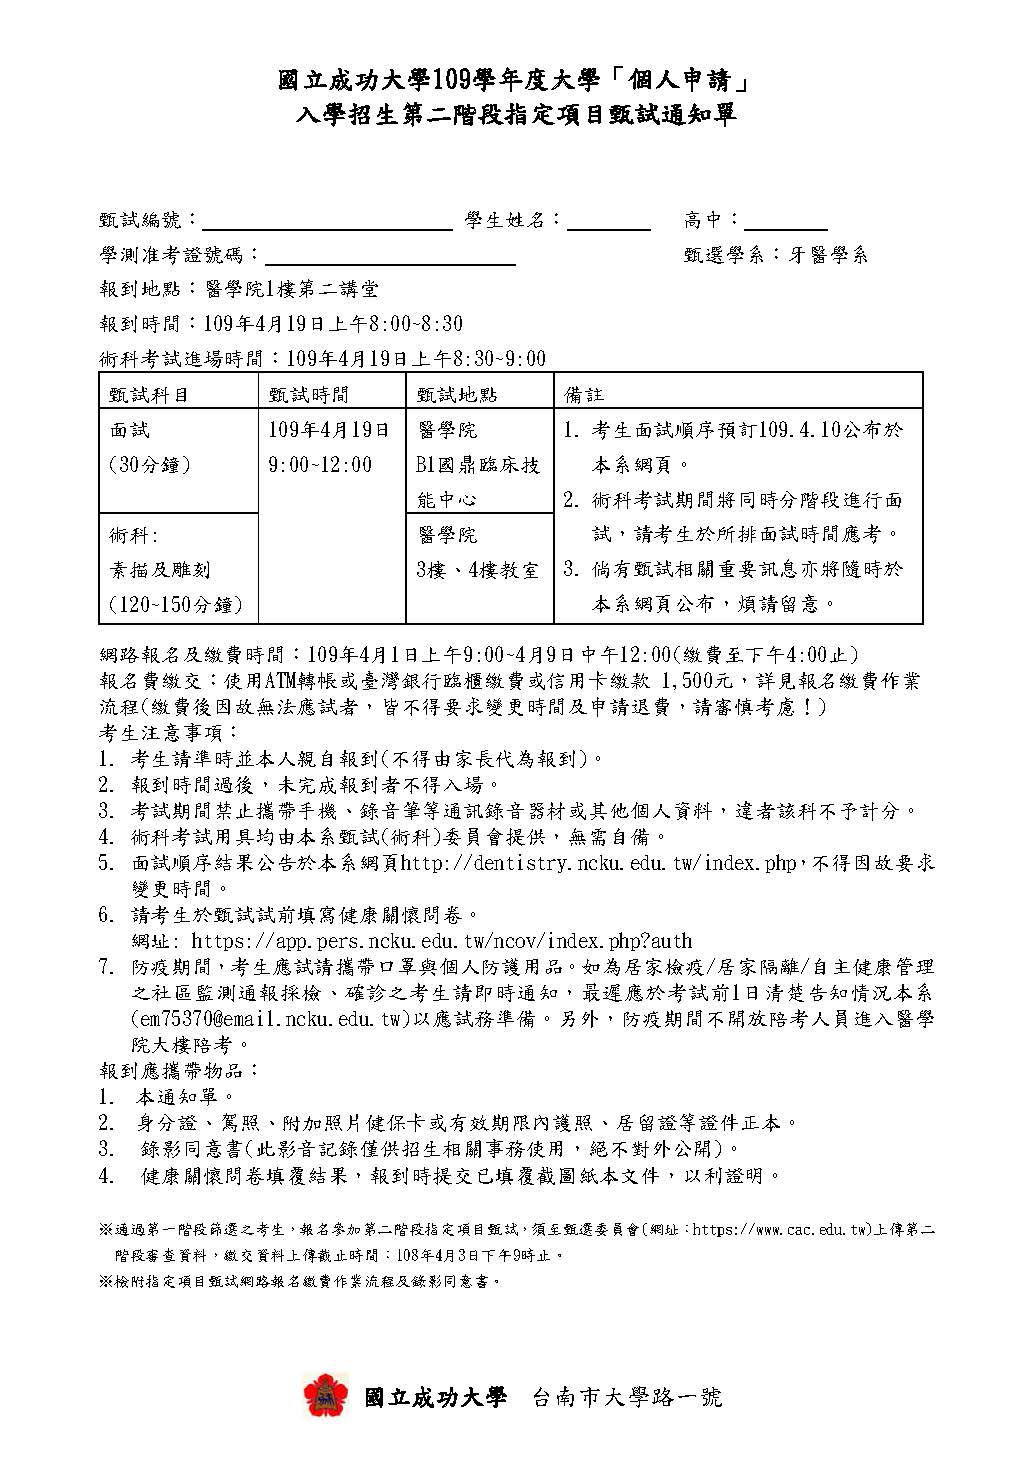 國立成功大學109學年度大學「個人申請」入學招生第二階段指定項目甄試通知單